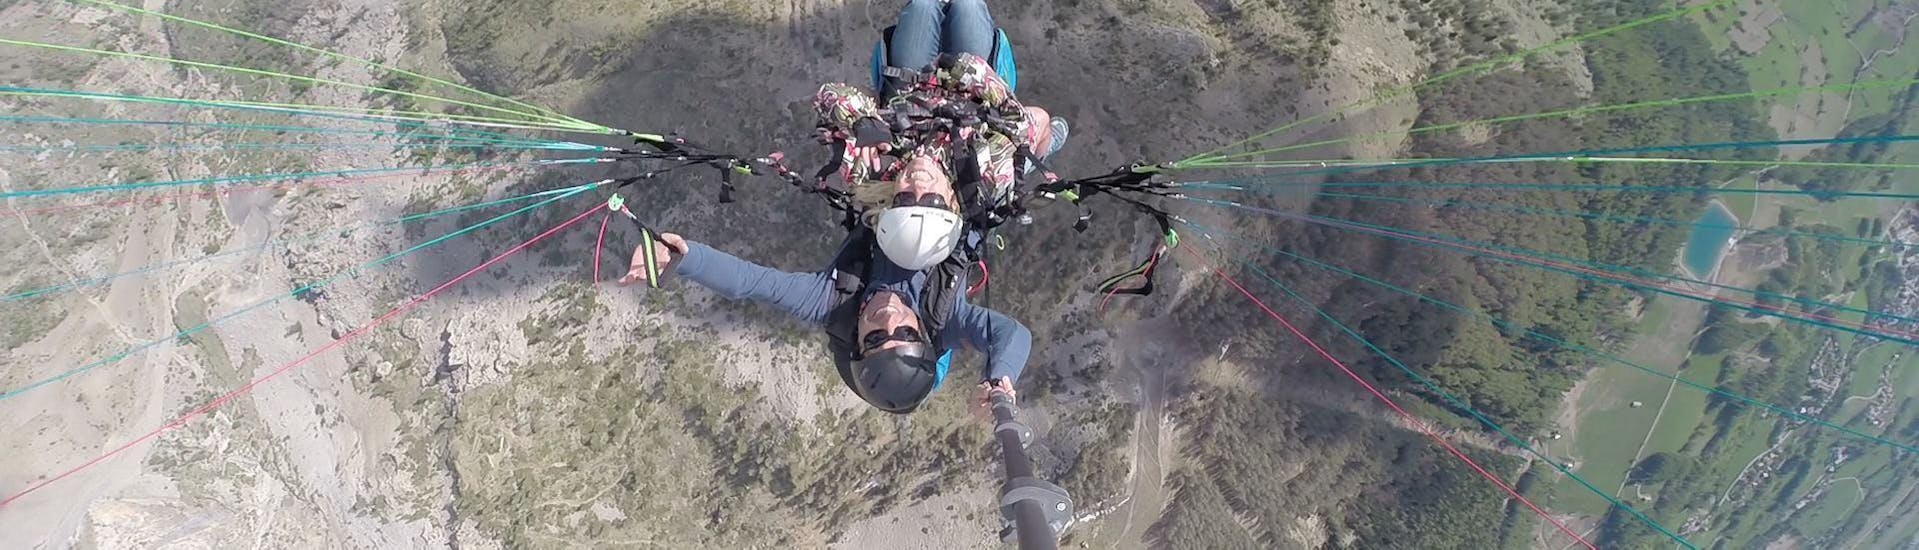 Tandem Paragliding "Getaway" - Barre des Ecrins.